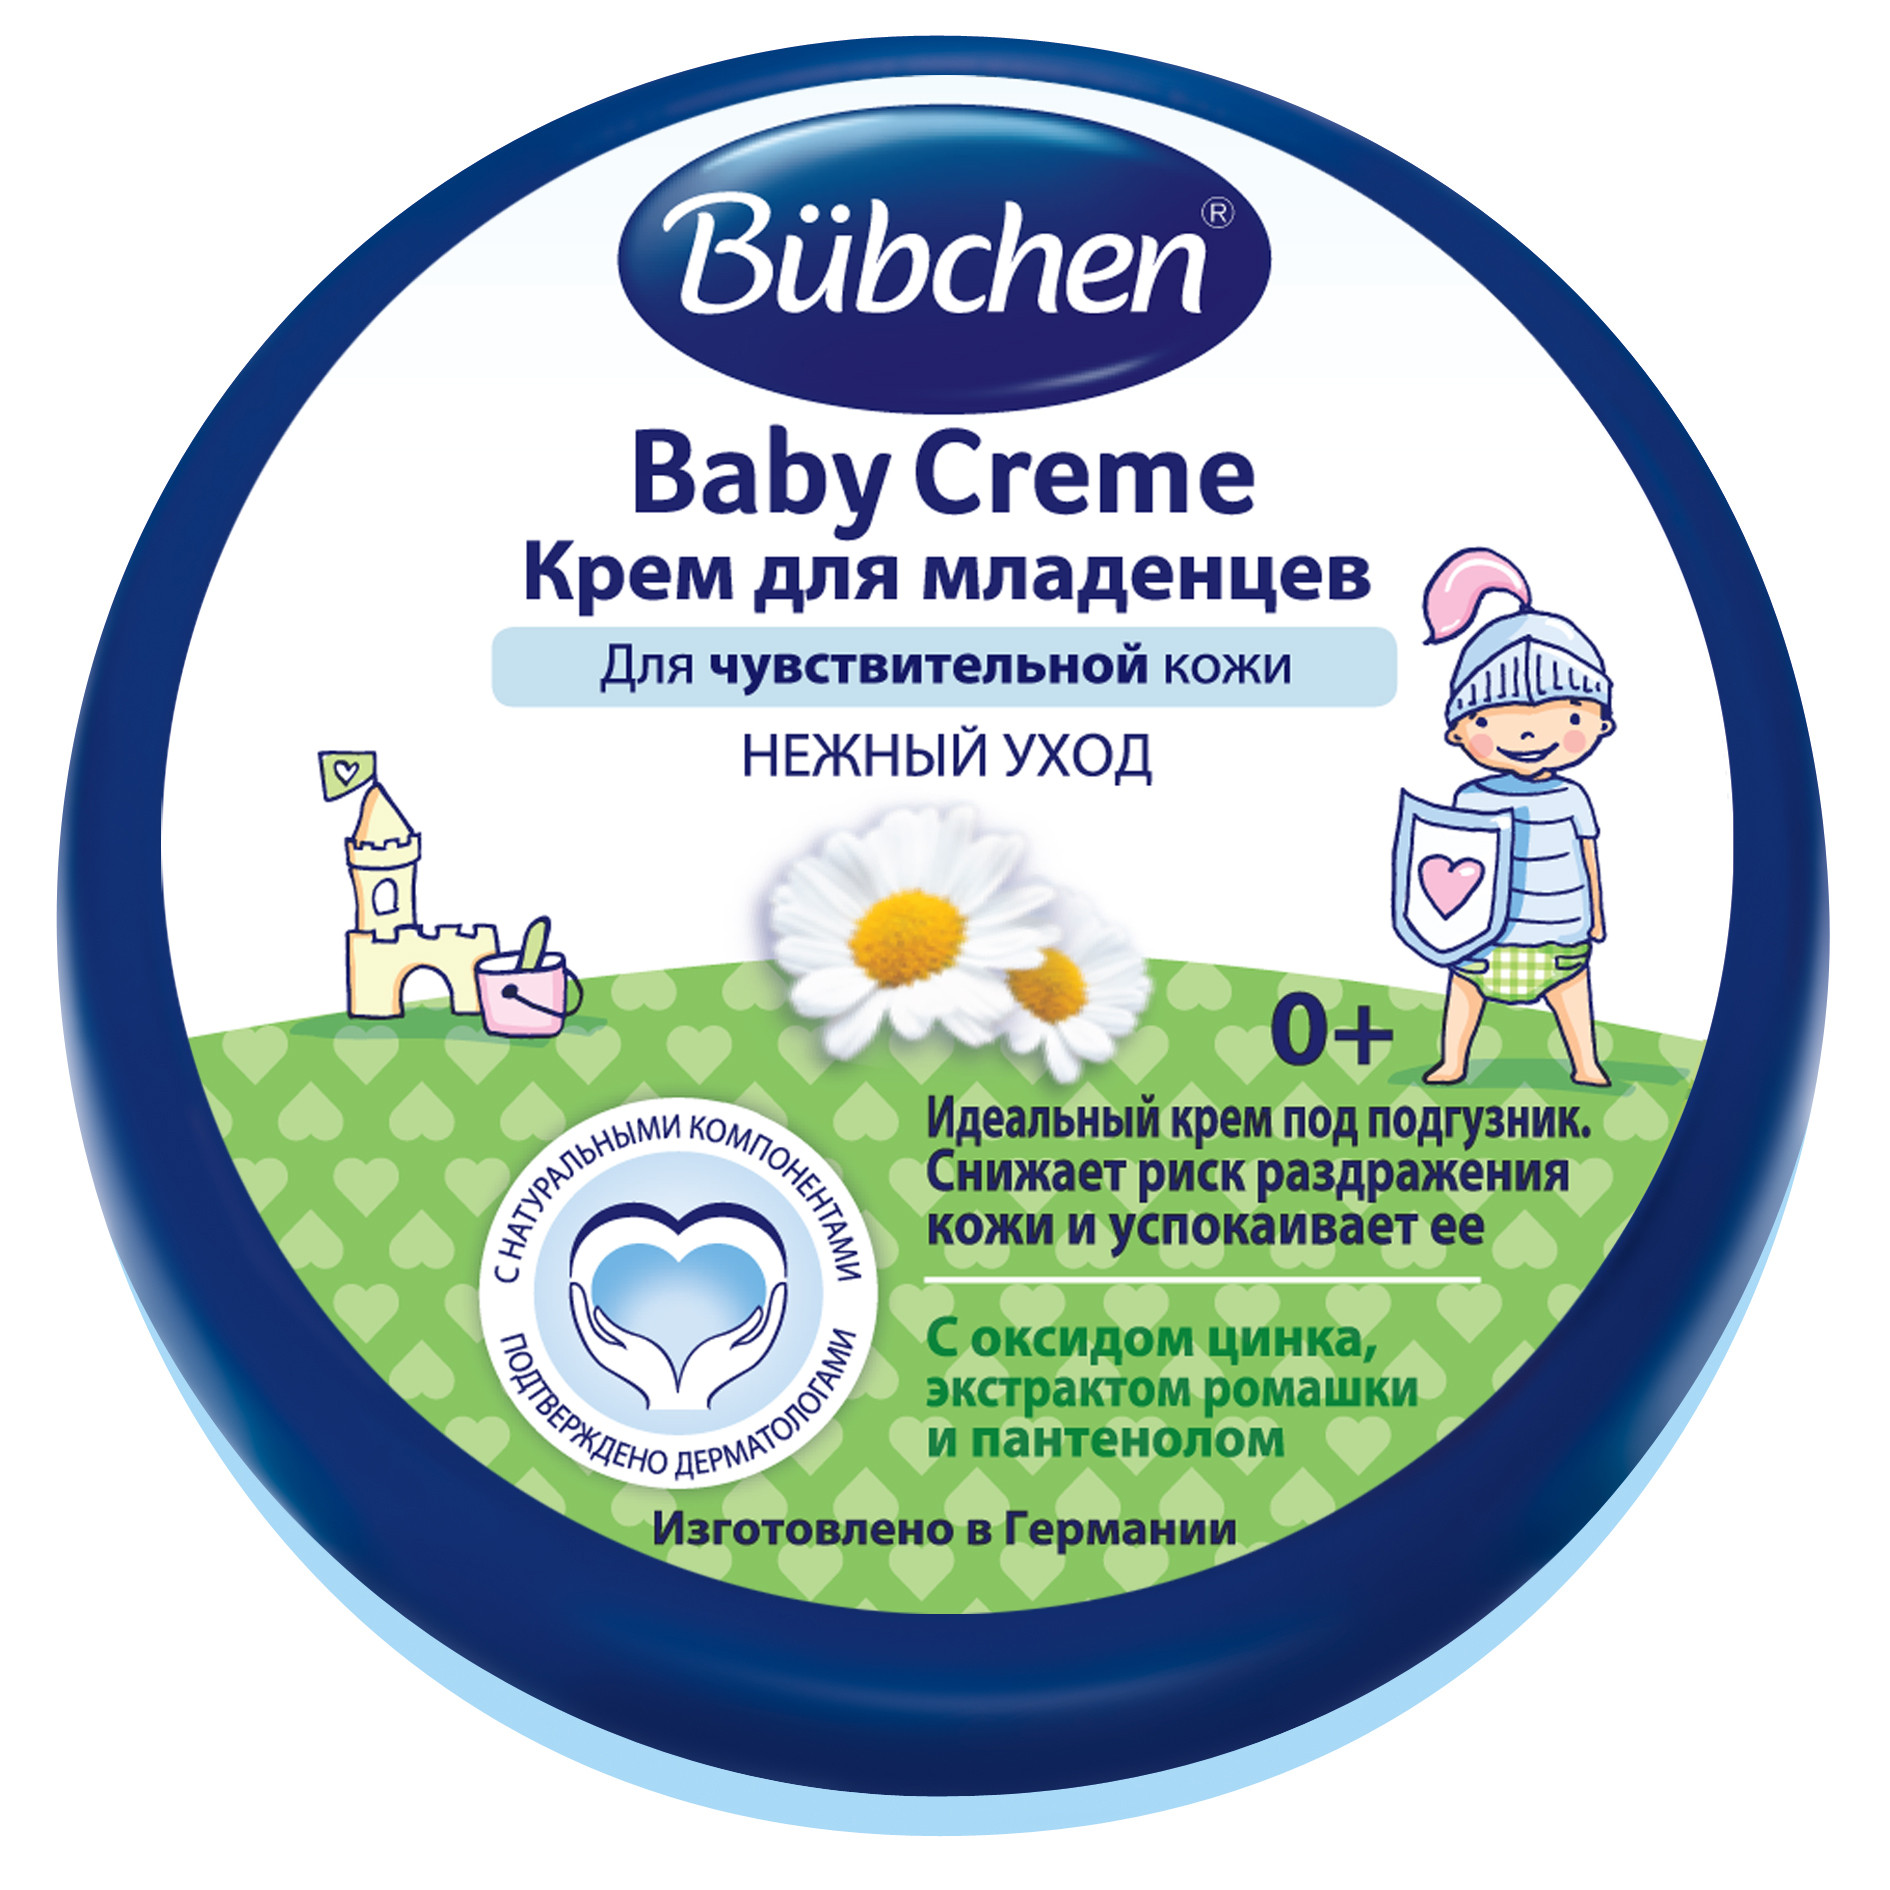 Бепантен под подгузник: инструкция по применению крема-мази у новорожденных, отзывы